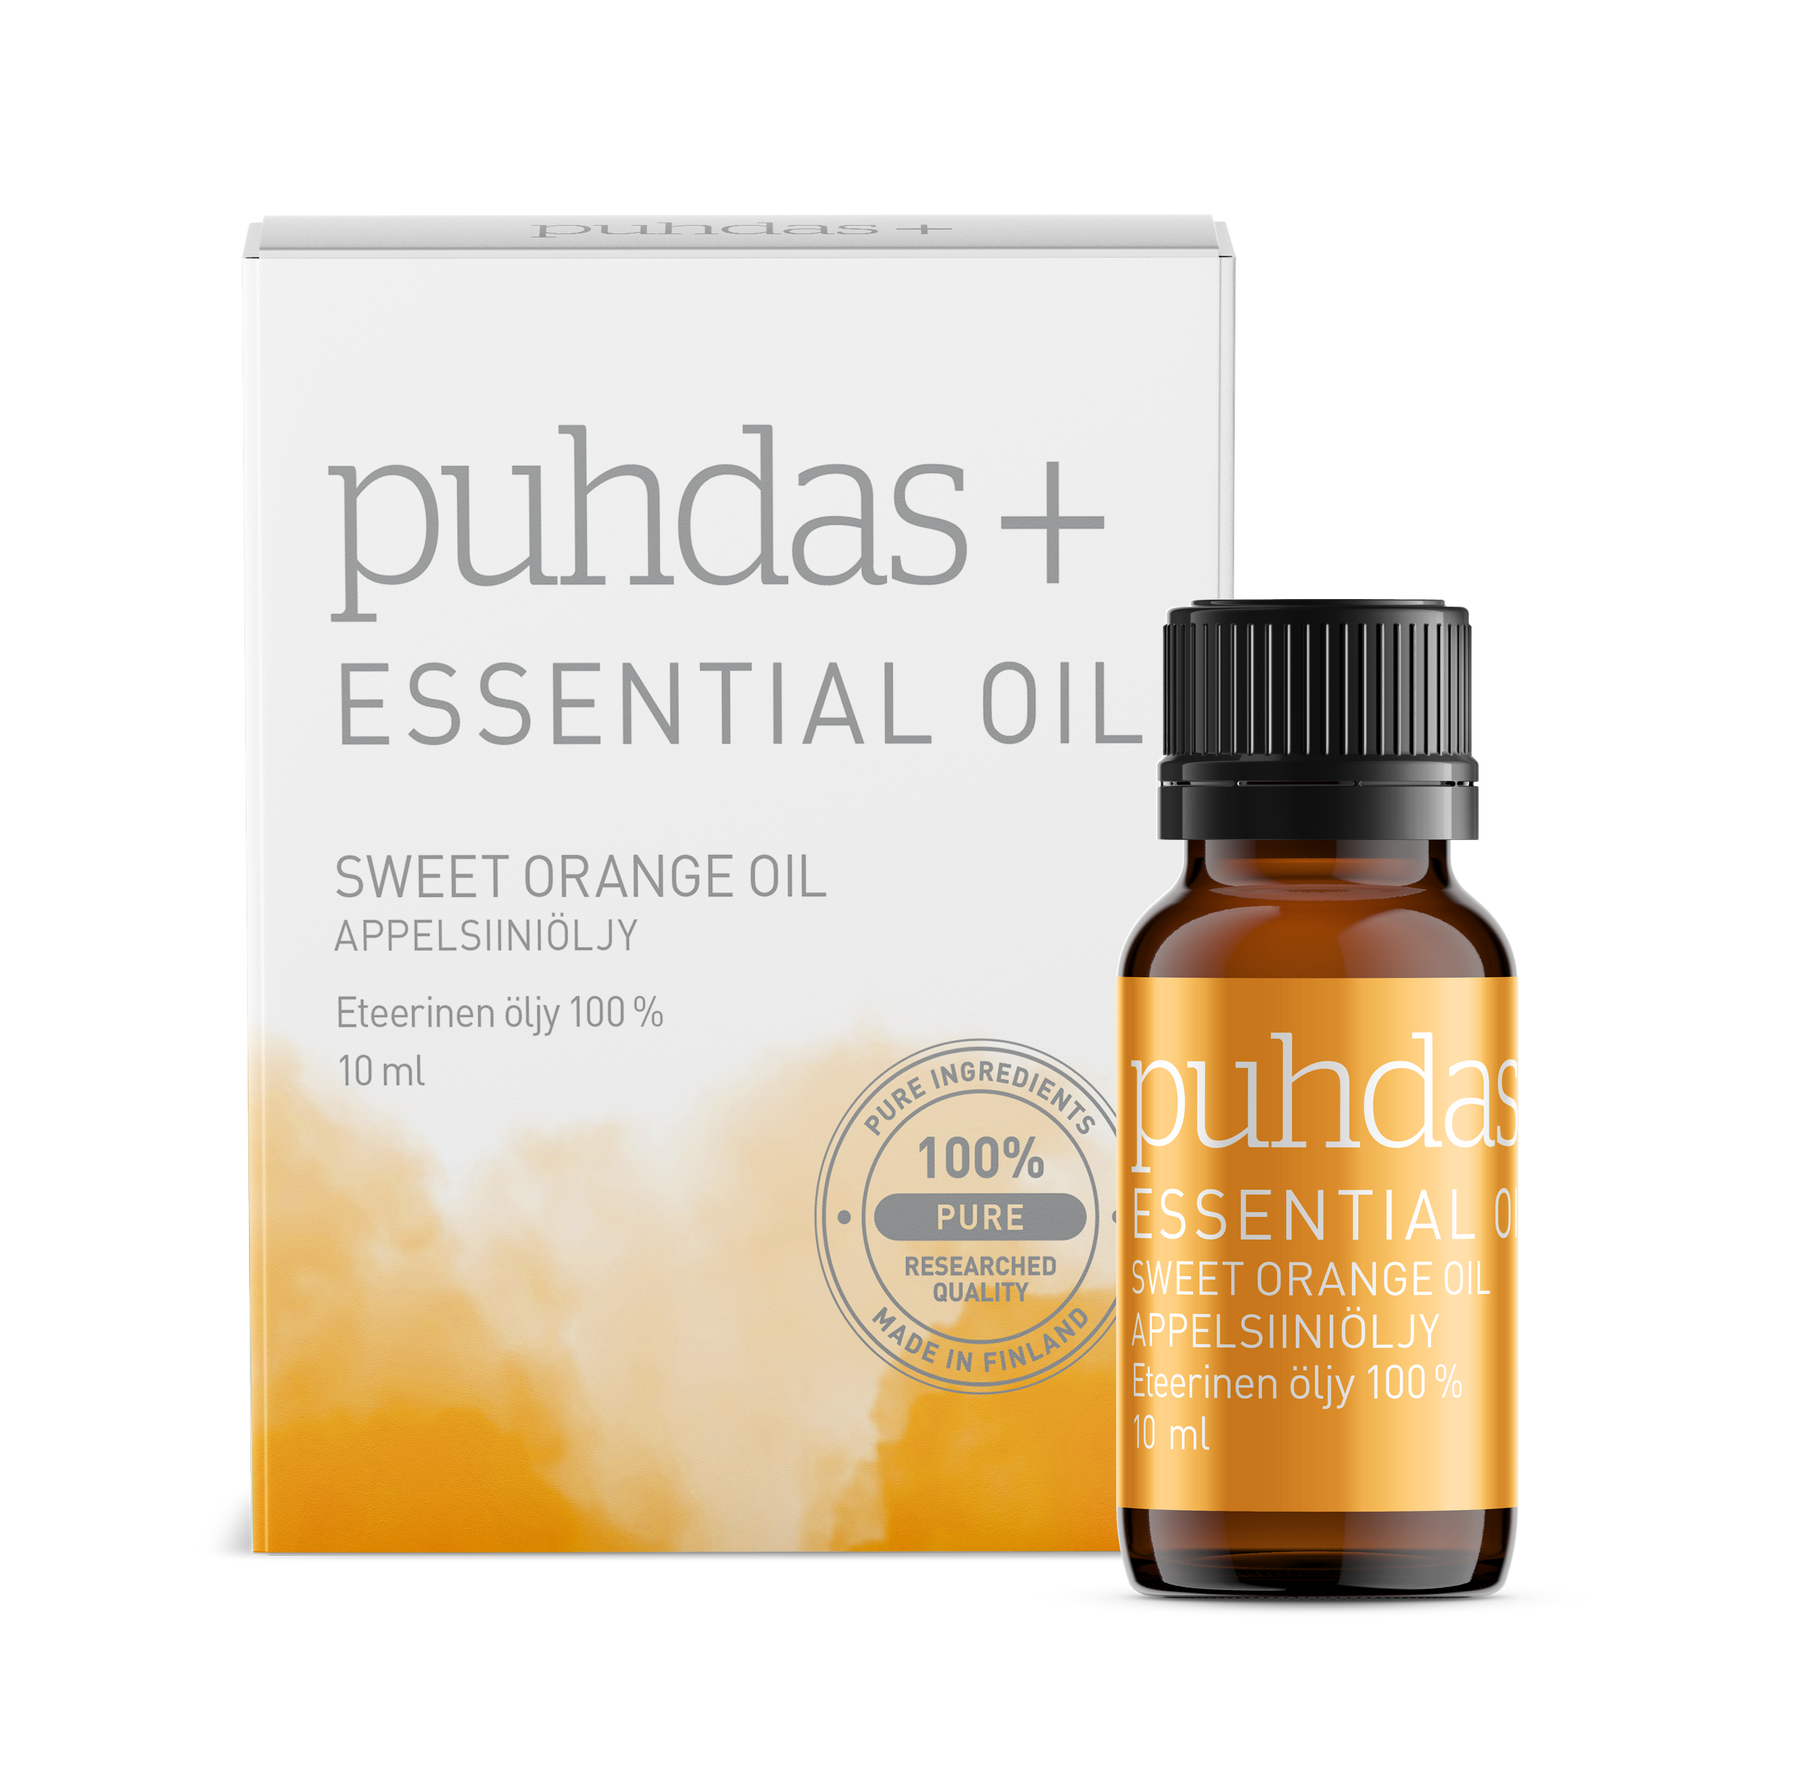 Puhdas+ Essential Oil Sweet Orange Oil 10 ml - Appelsiiniöljy